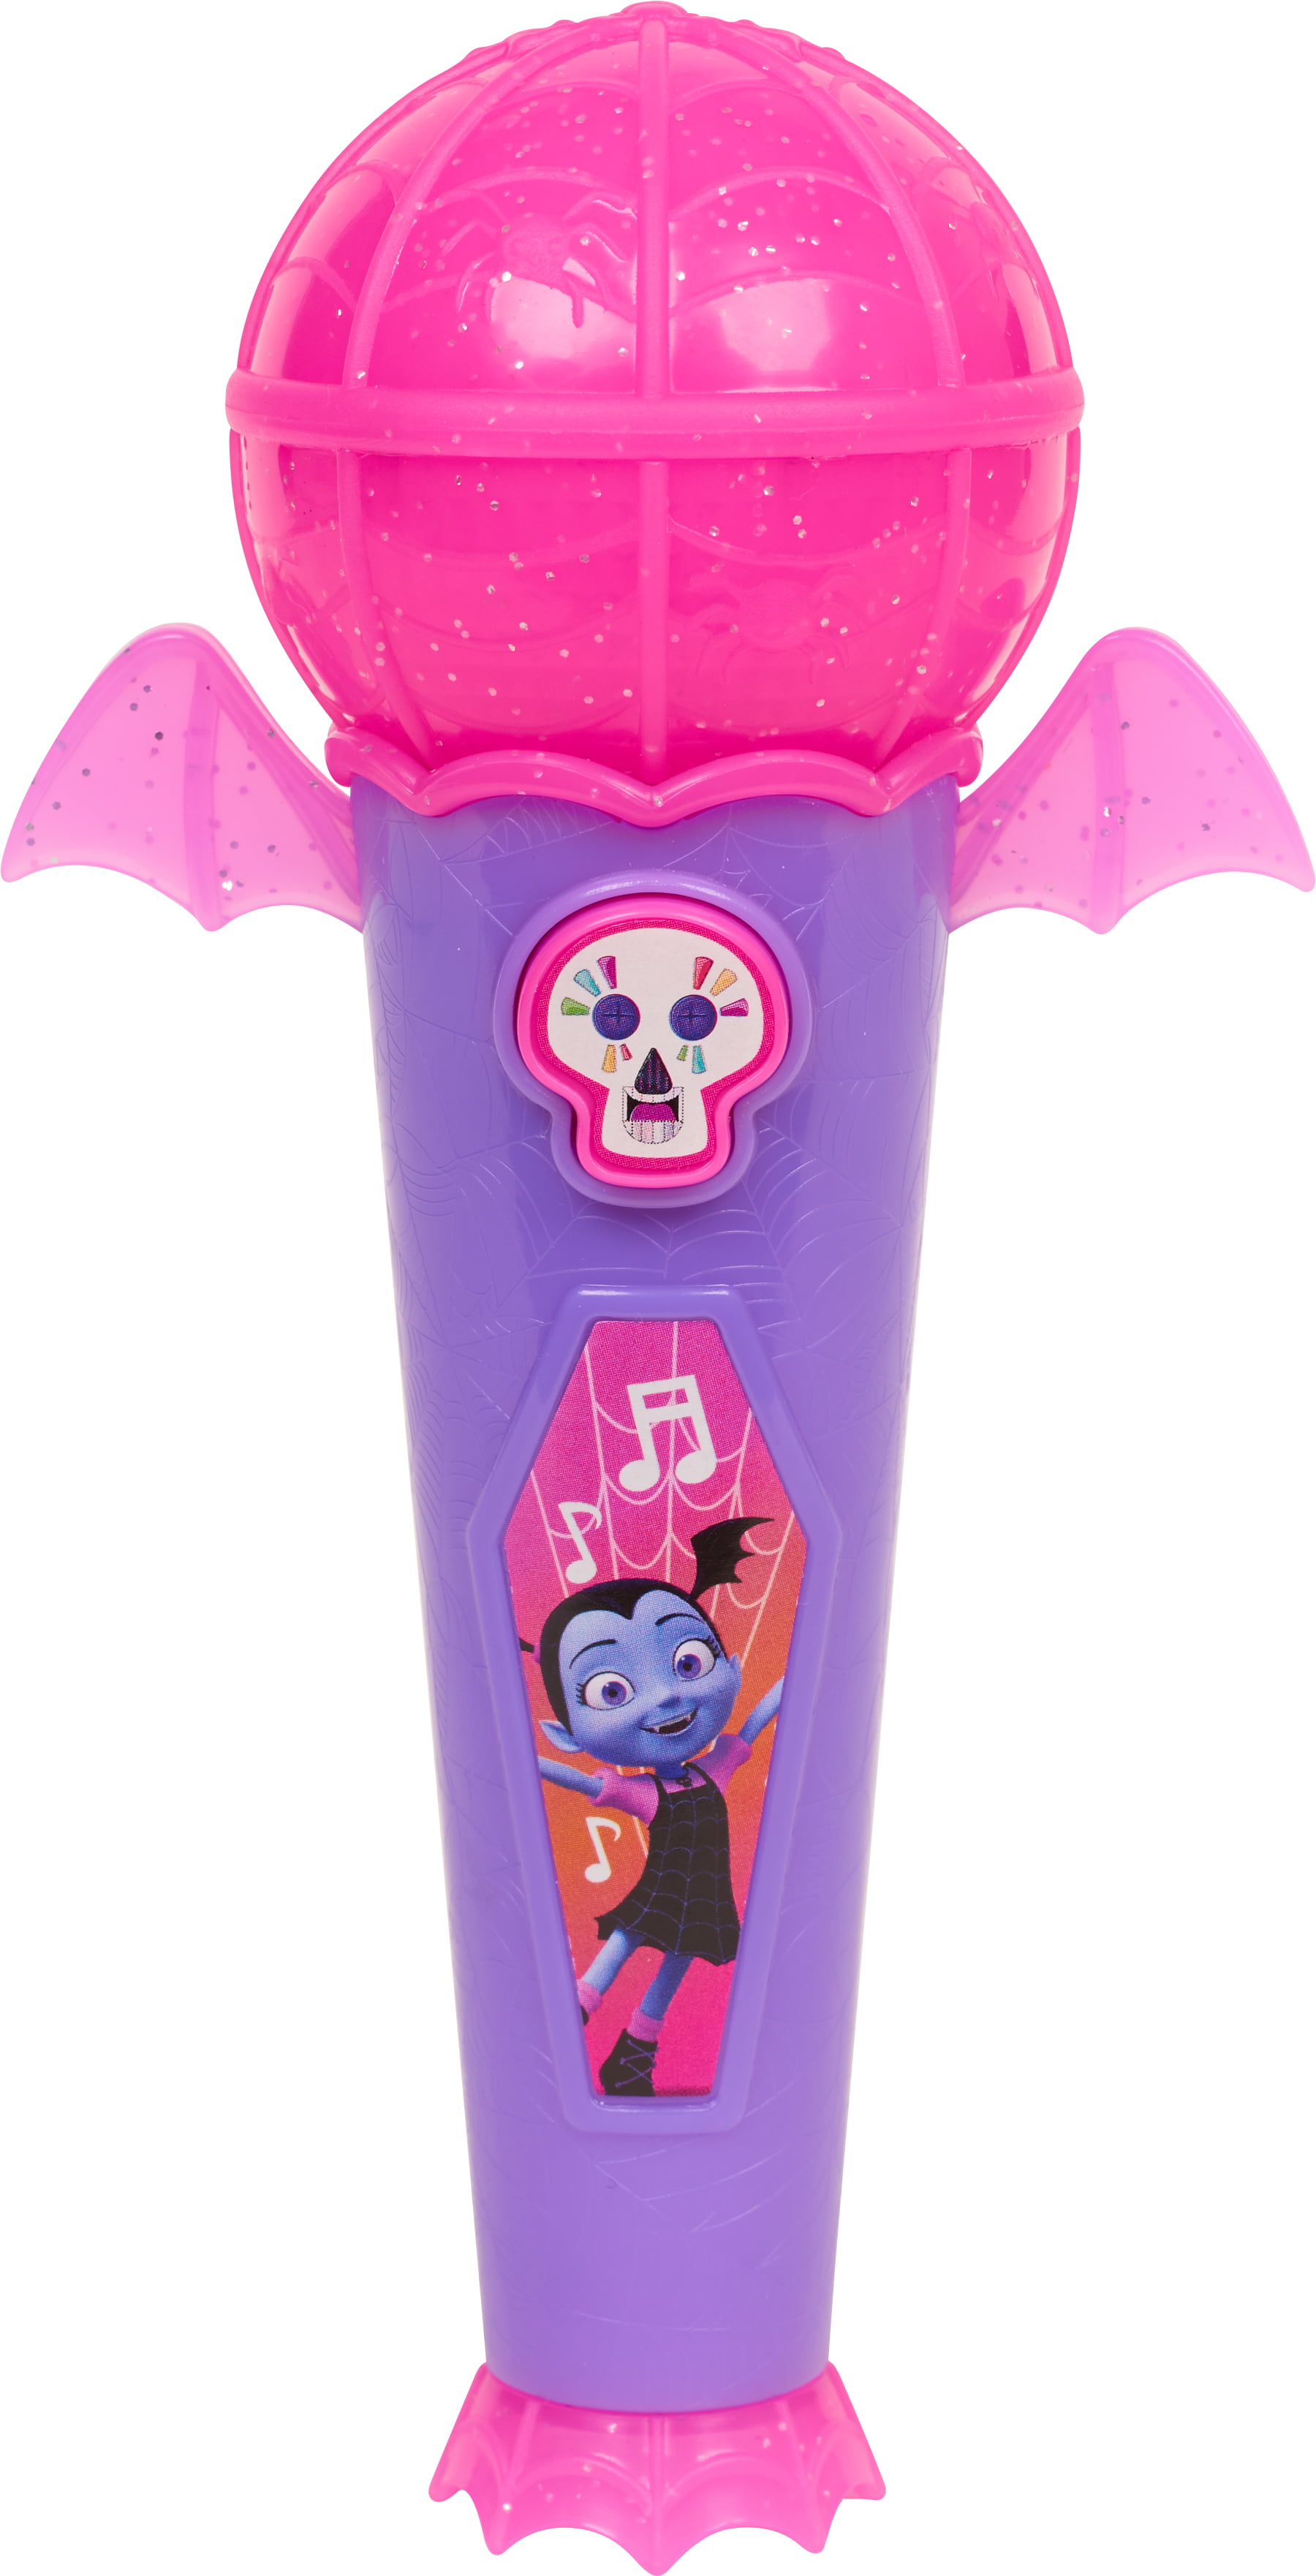 Vamperina Rock n' Ghoul Microphone Disney Junior Toy Pink Purple Brand New 